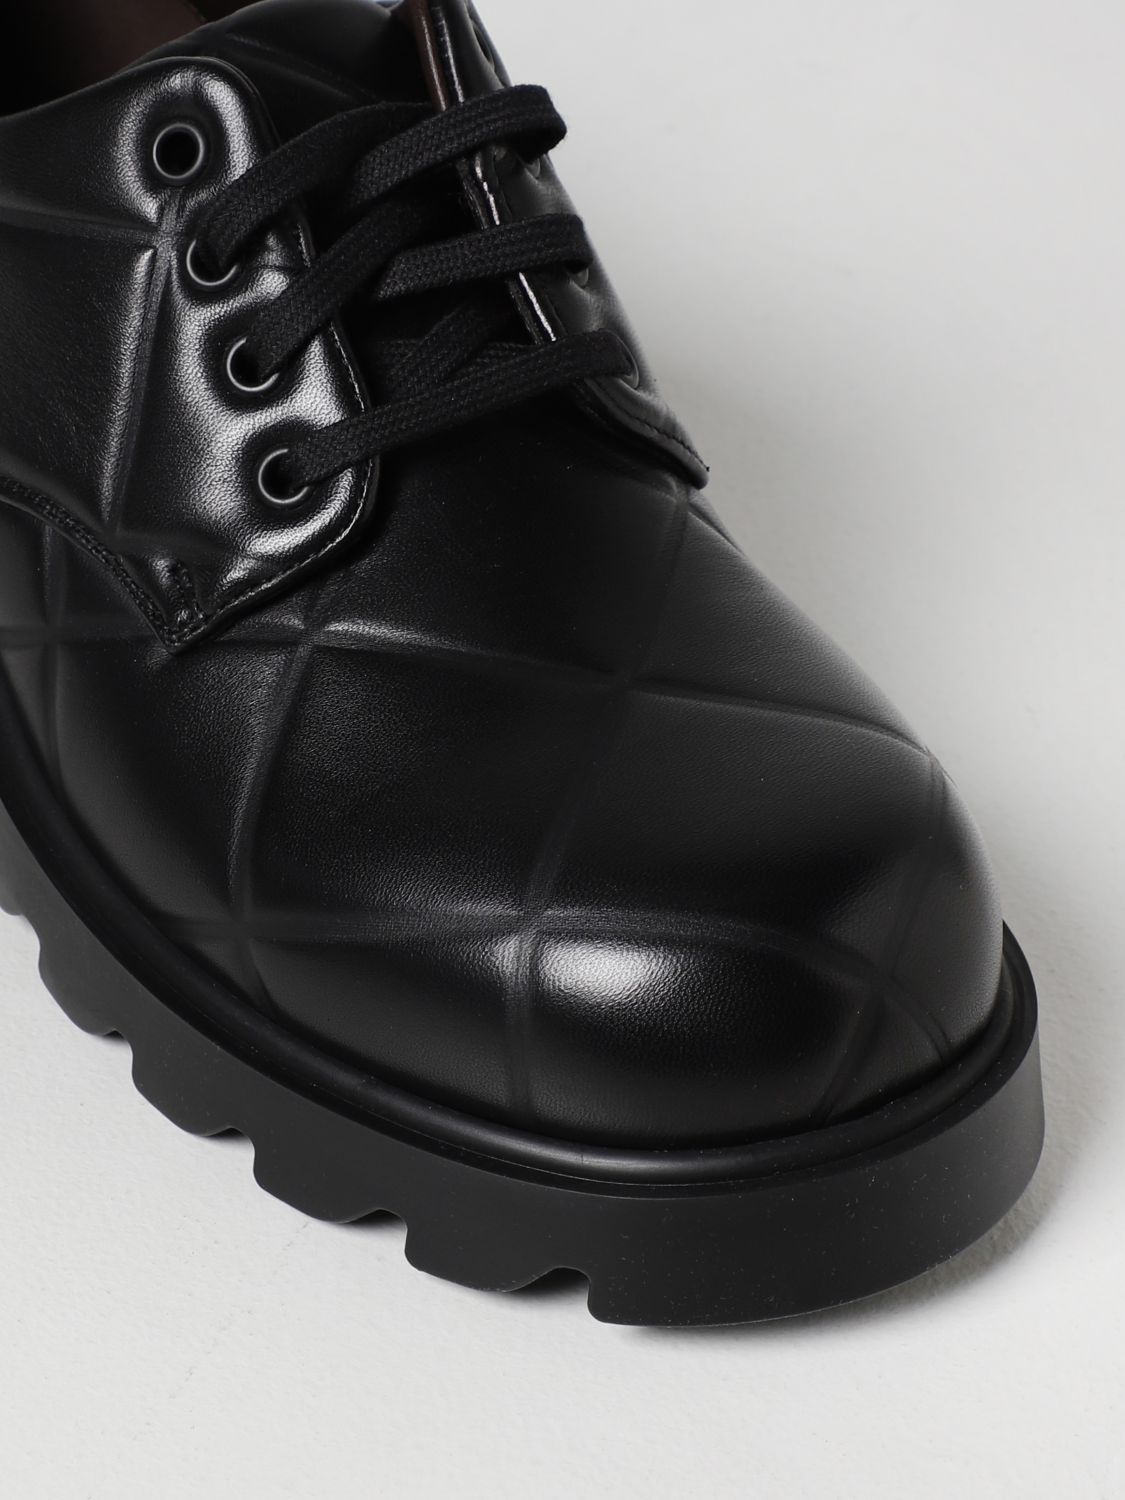 BOTTEGA VENETA: Strut Grid lace-up shoes - Black | Bottega Veneta ...